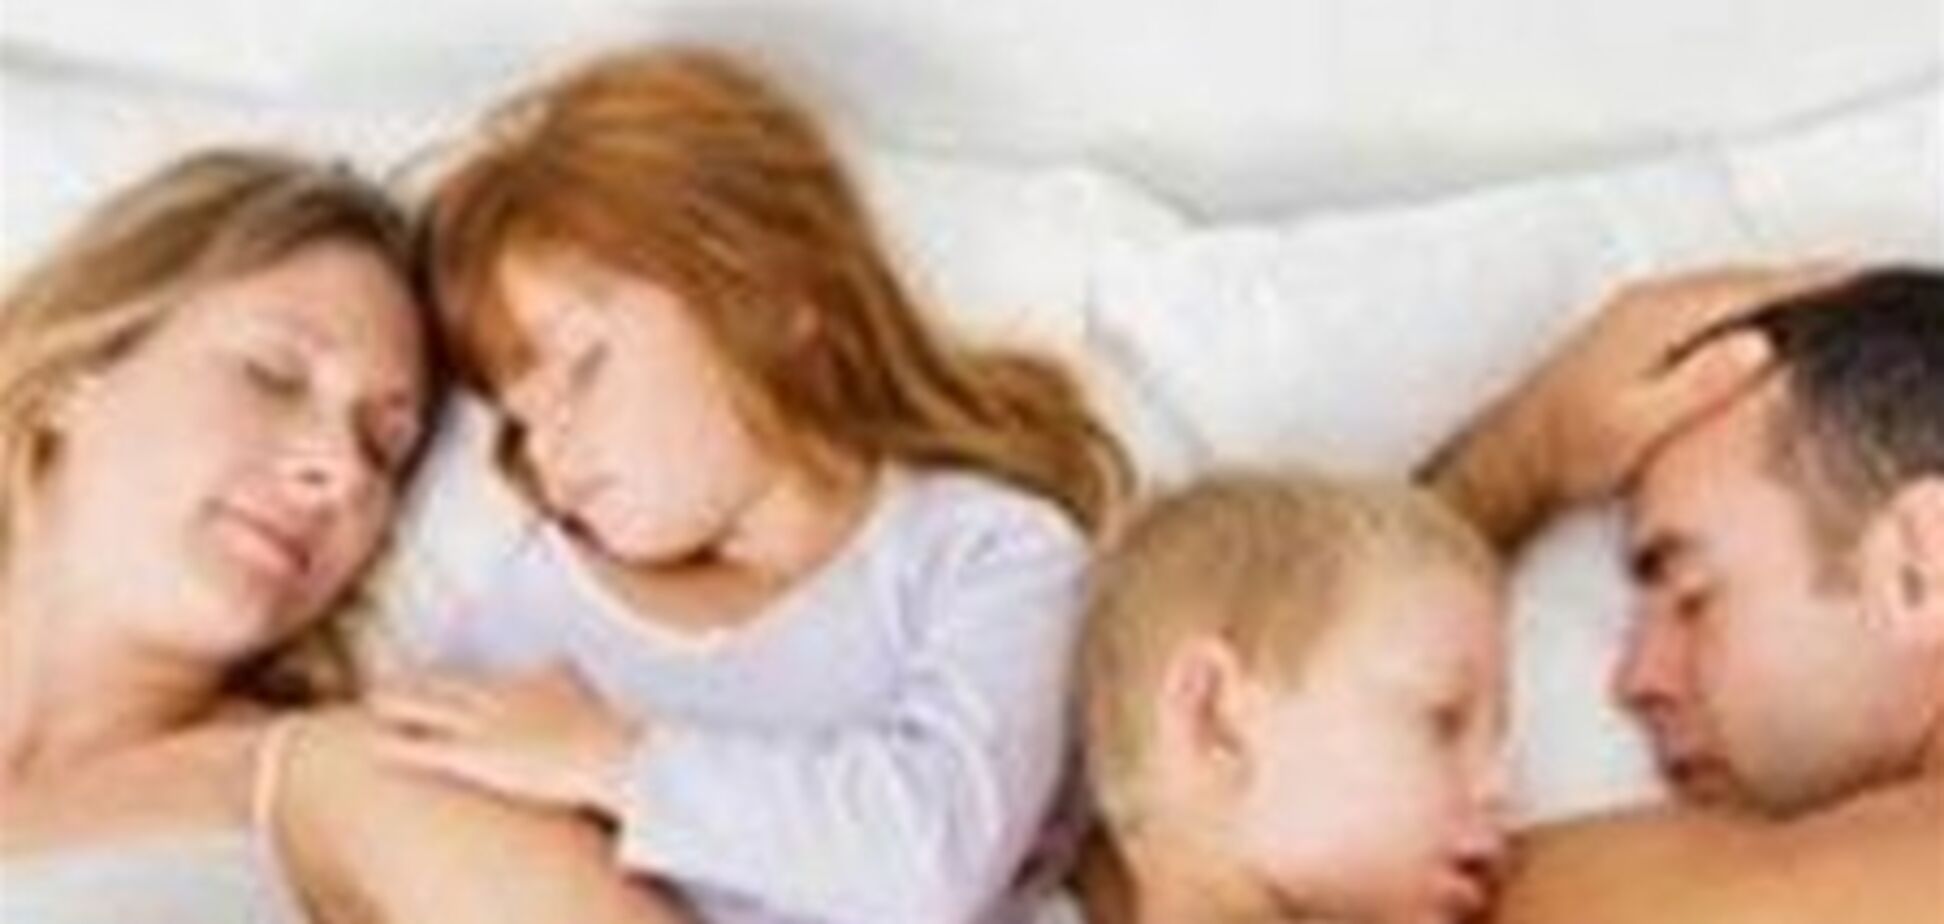 Звичка брати дітей з собою в ліжко руйнує сім'ї